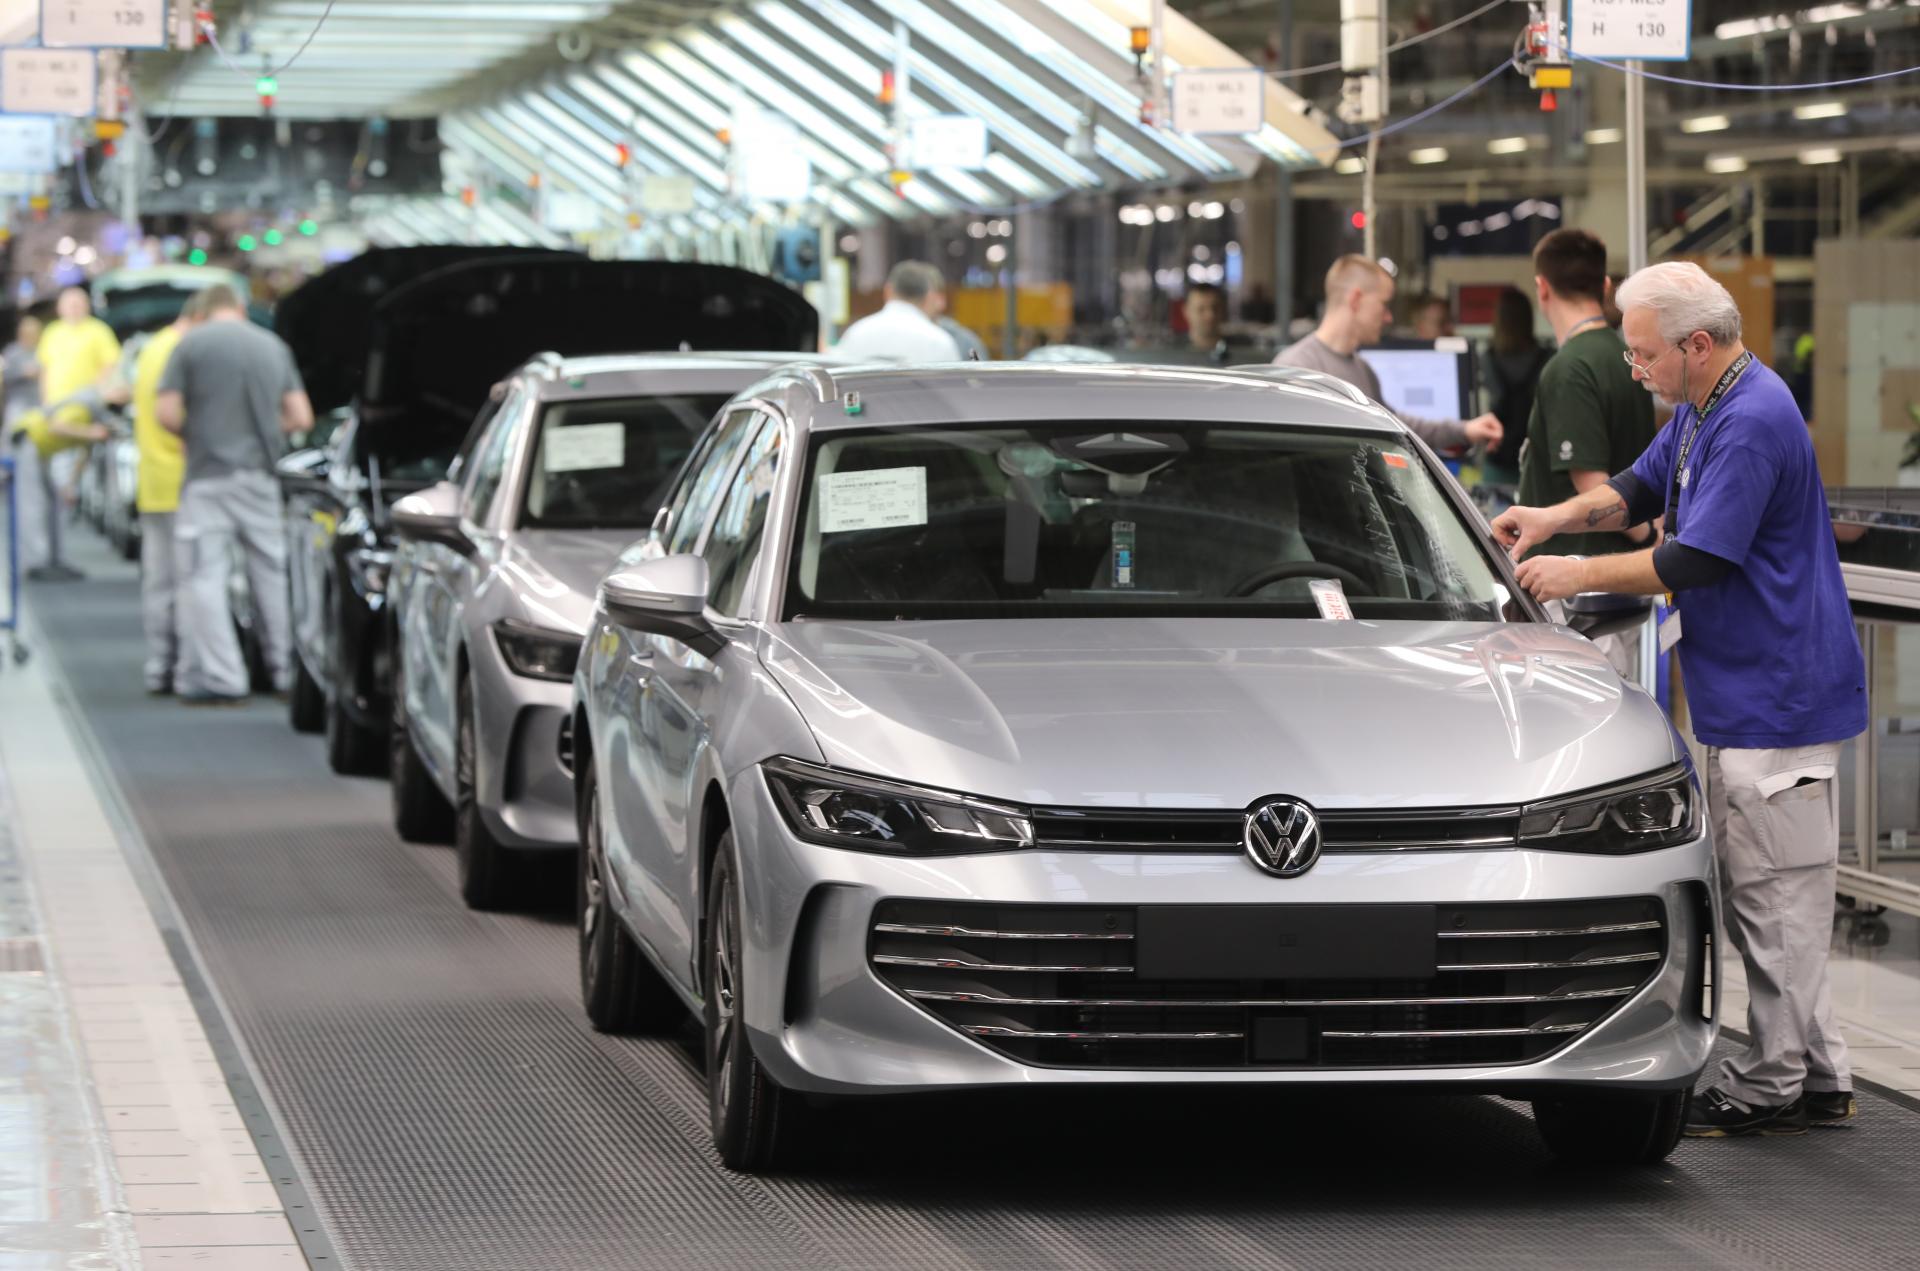 Skompletizuje bratislavský Volkswagen postupku z Ingolstadtu? Brusel dostal fabriku do hry o top model